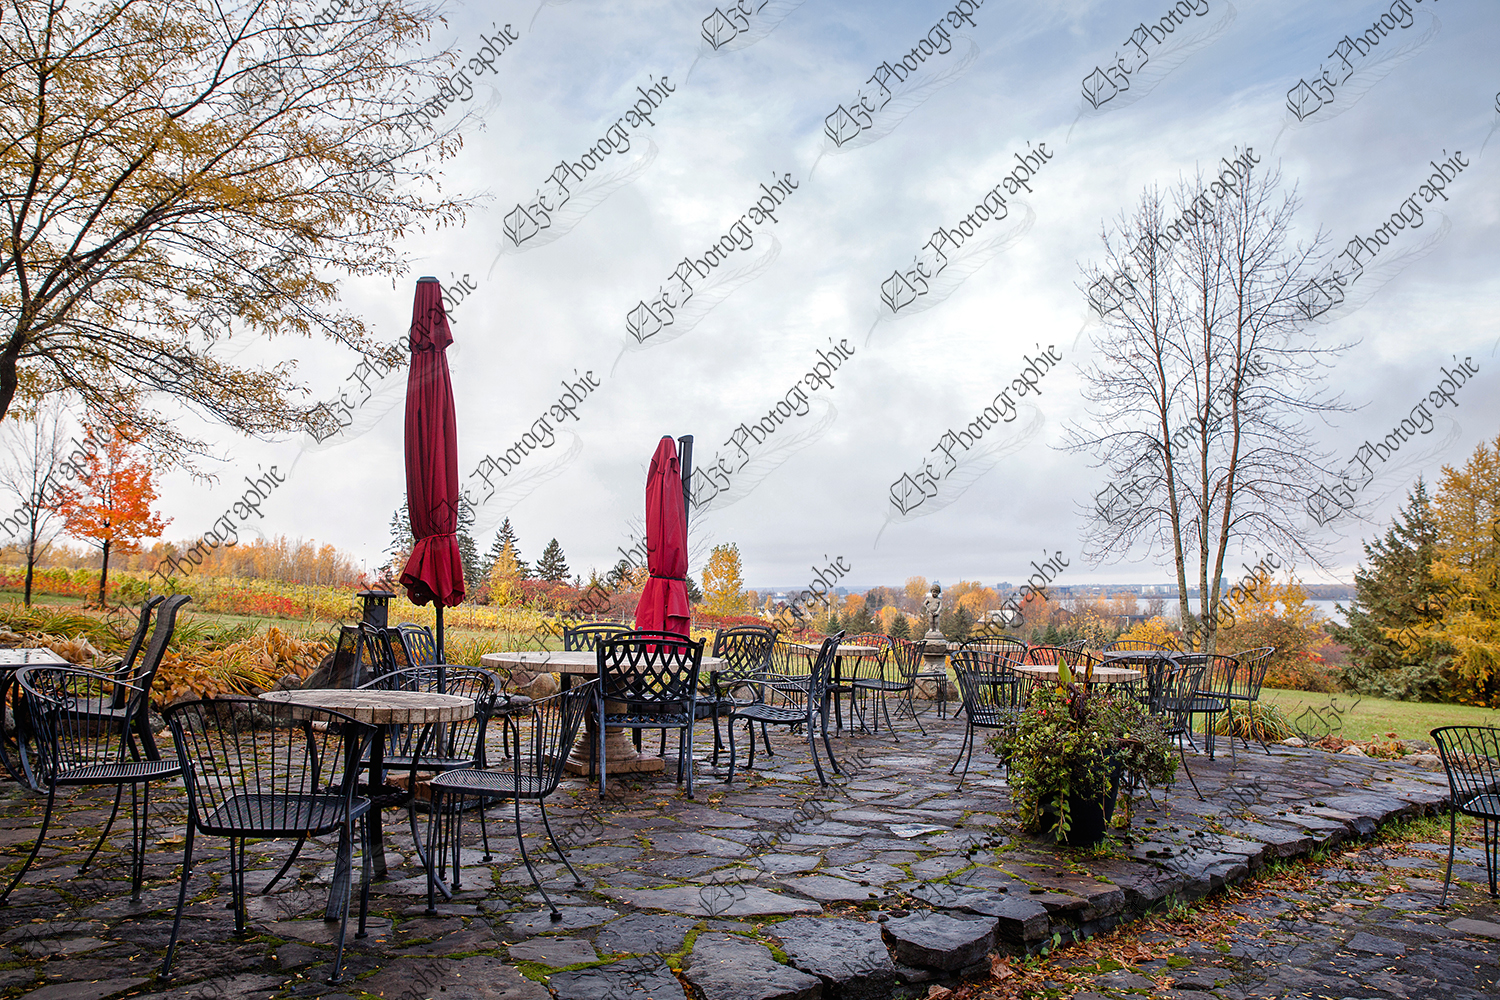 elze_photo_3263_terrasse_automne_vignoble_terrace_chairs